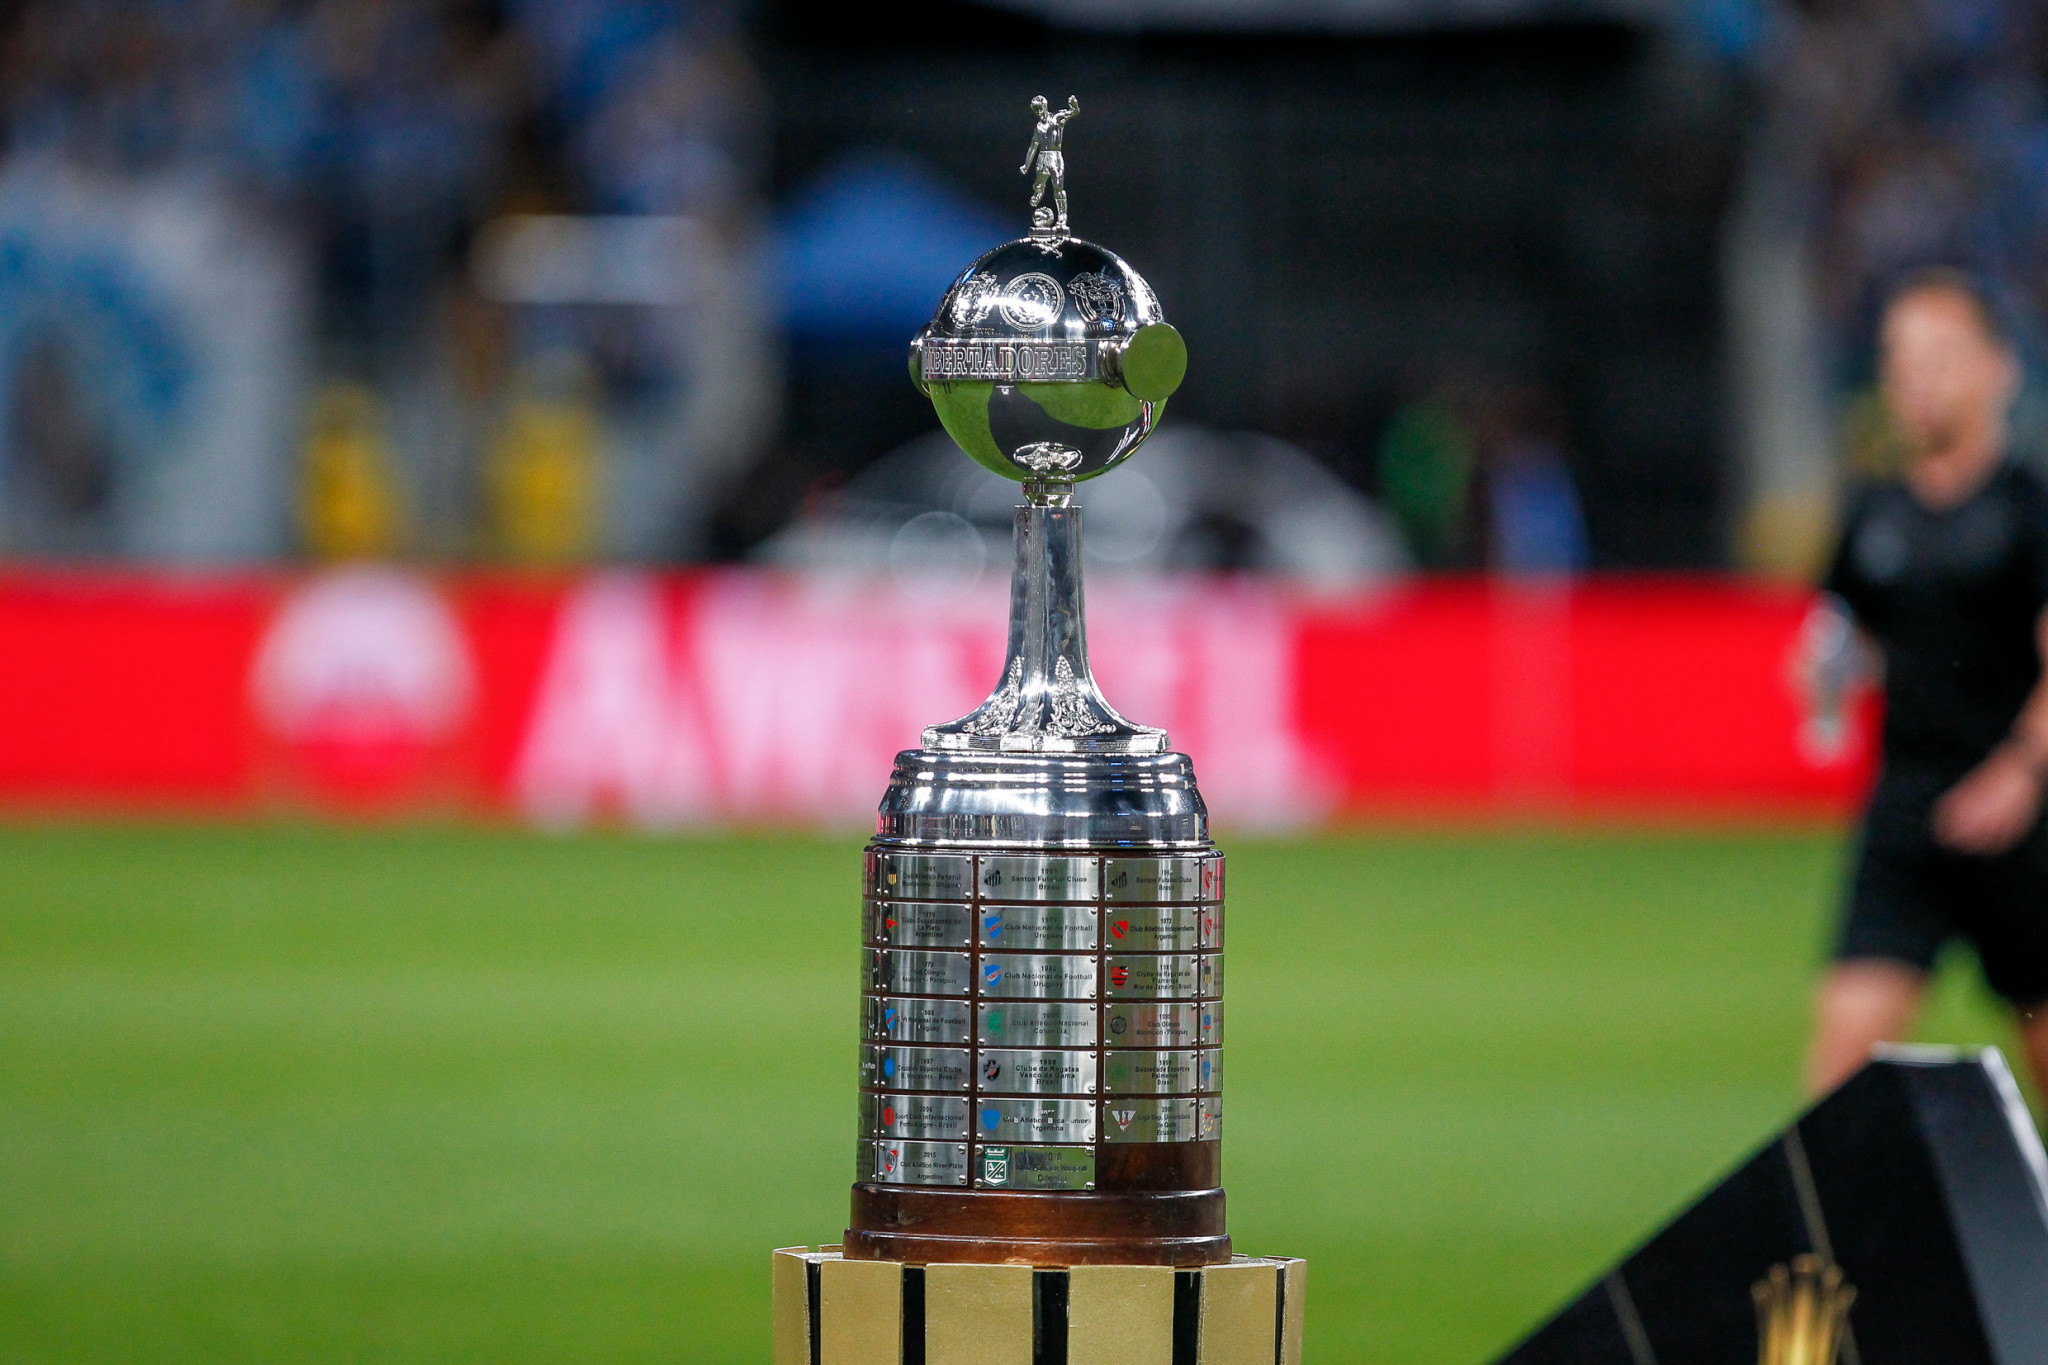 Taça Libertadores da América